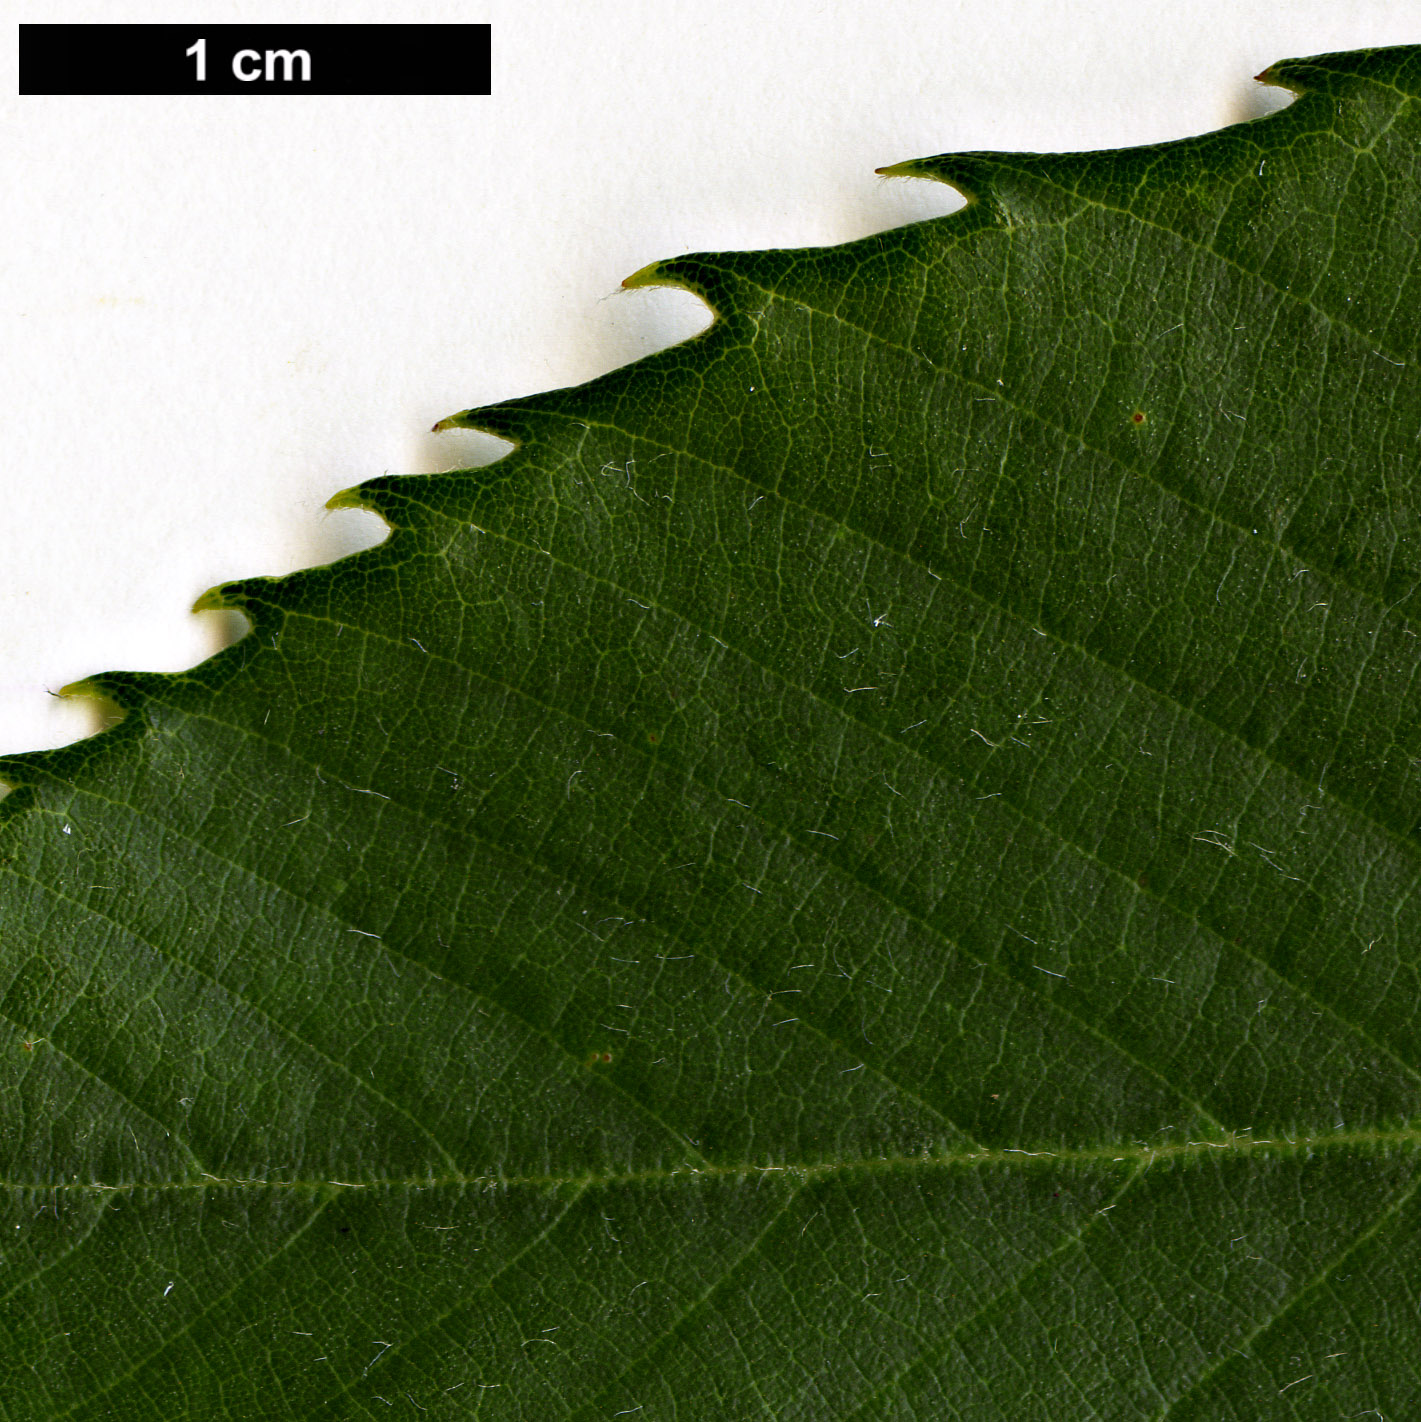 High resolution image: Family: Fagaceae - Genus: Quercus - Taxon: gambleana 